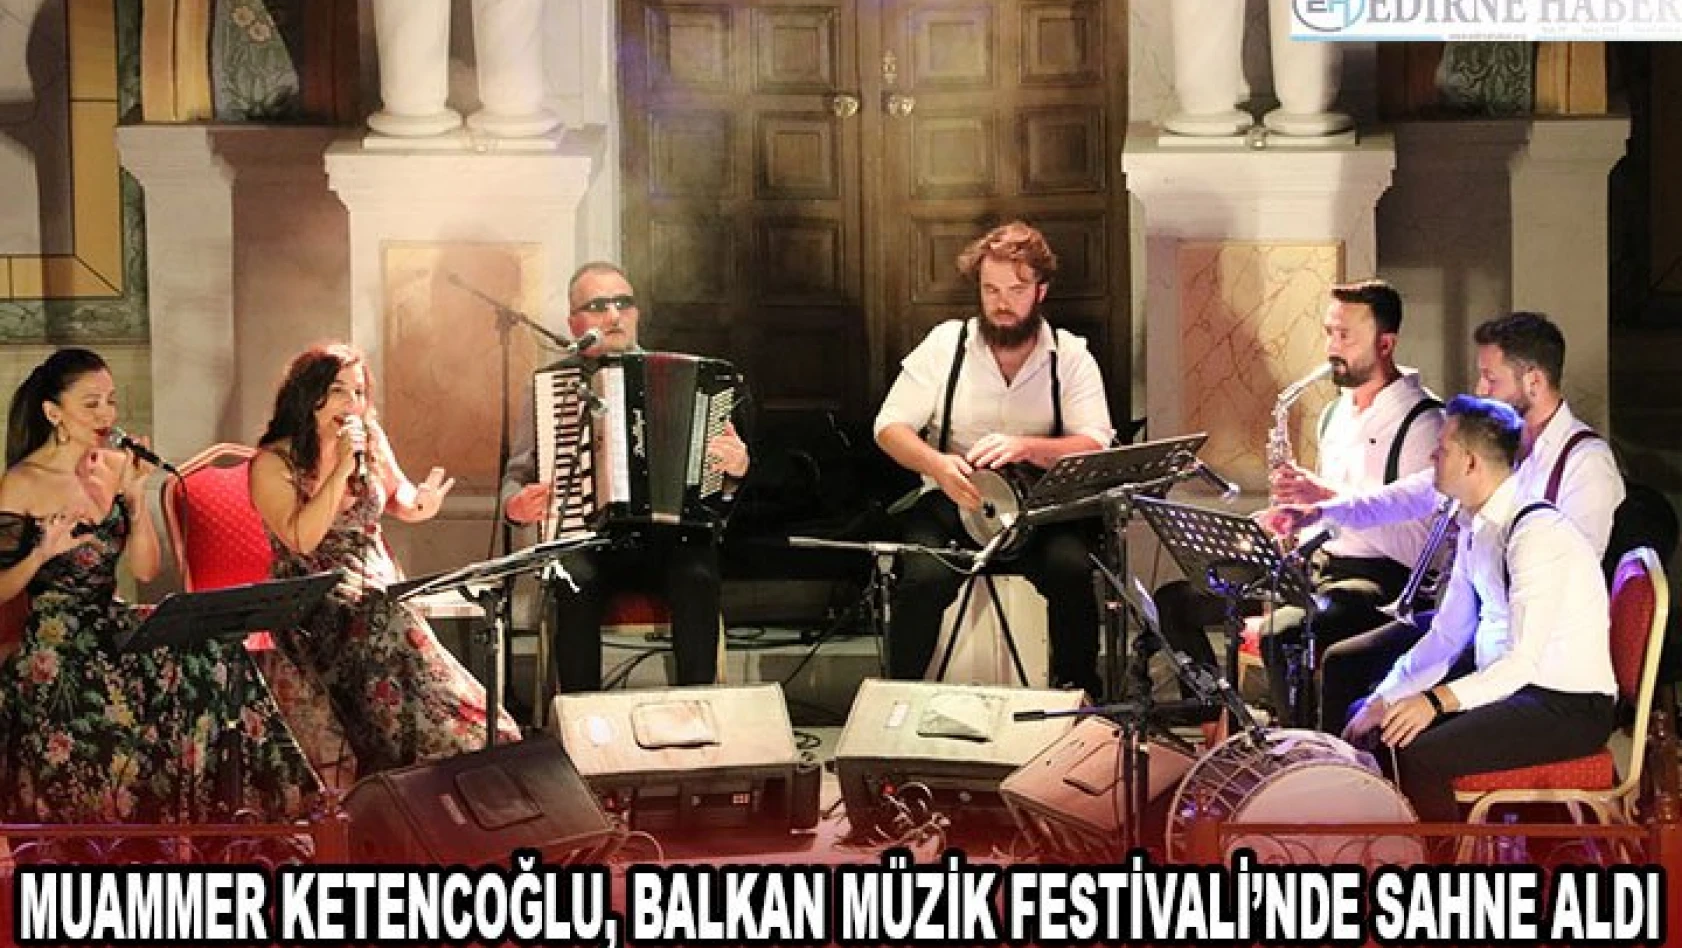 Muammer Ketencoğlu, Balkan Müzik Festivali'nde sahne aldı